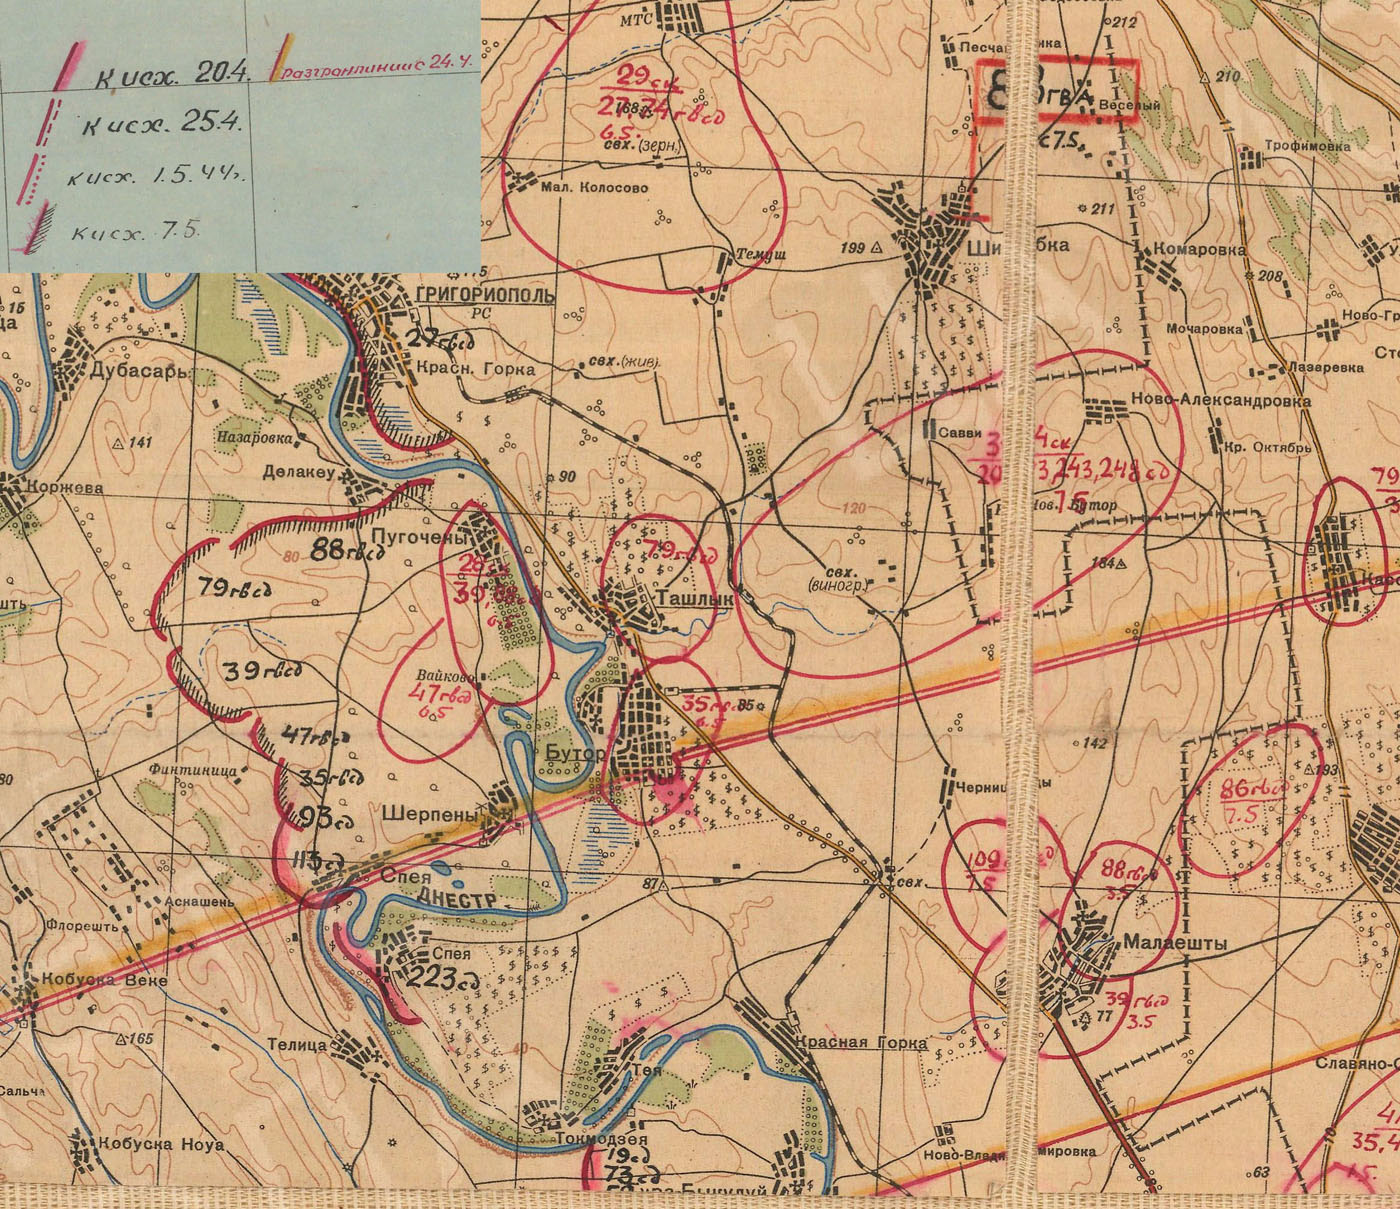 Отчетная карта штаба фронта за период с 20 апреля по 7 мая 1944